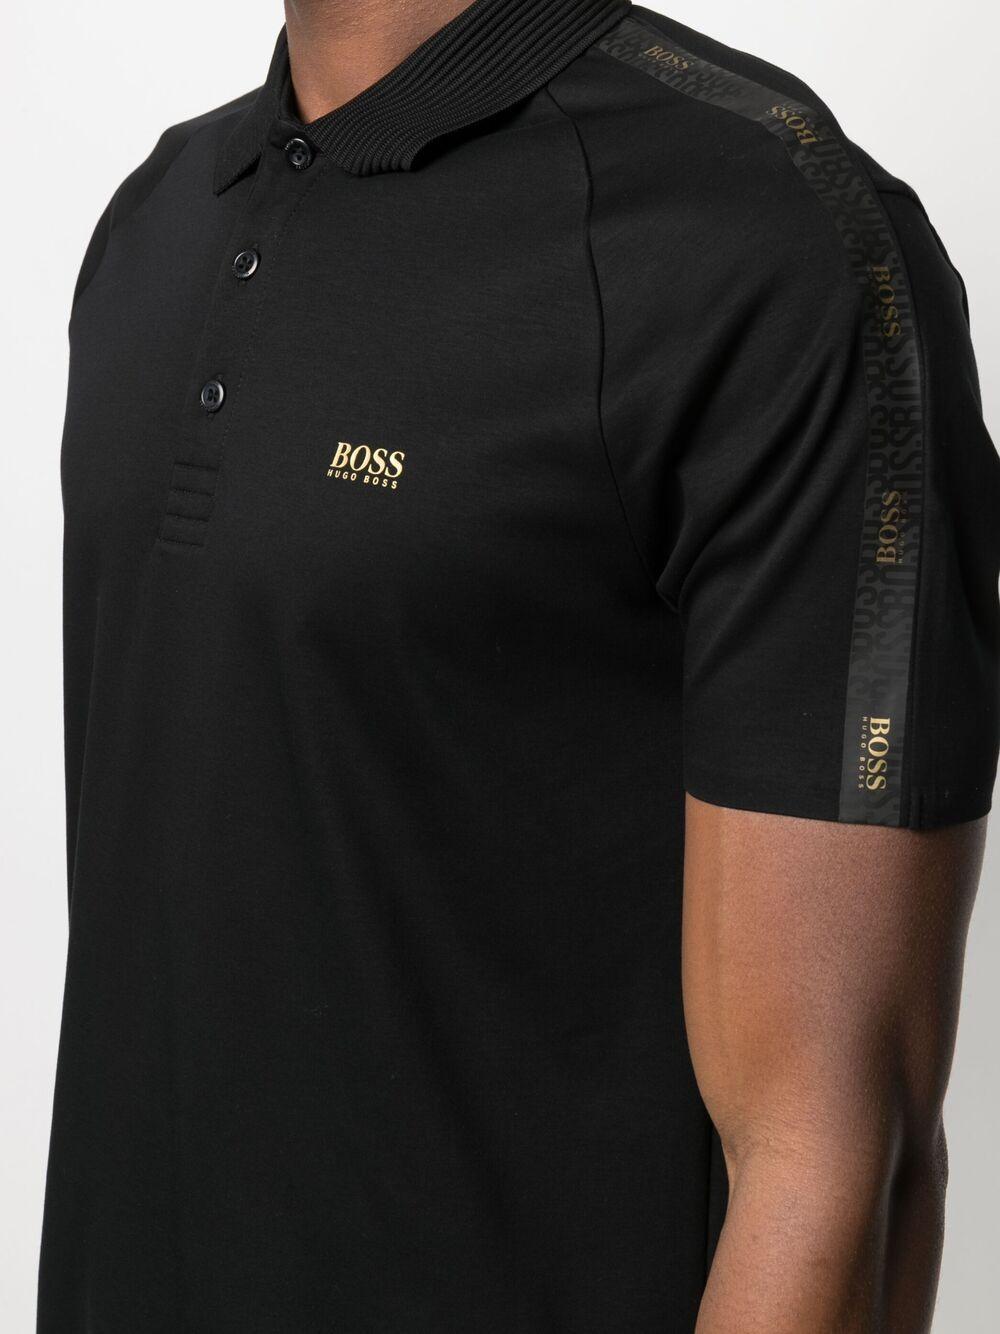 BOSS by HUGO BOSS Boss Gold Capsule Polo Shirt Black for Men | Lyst